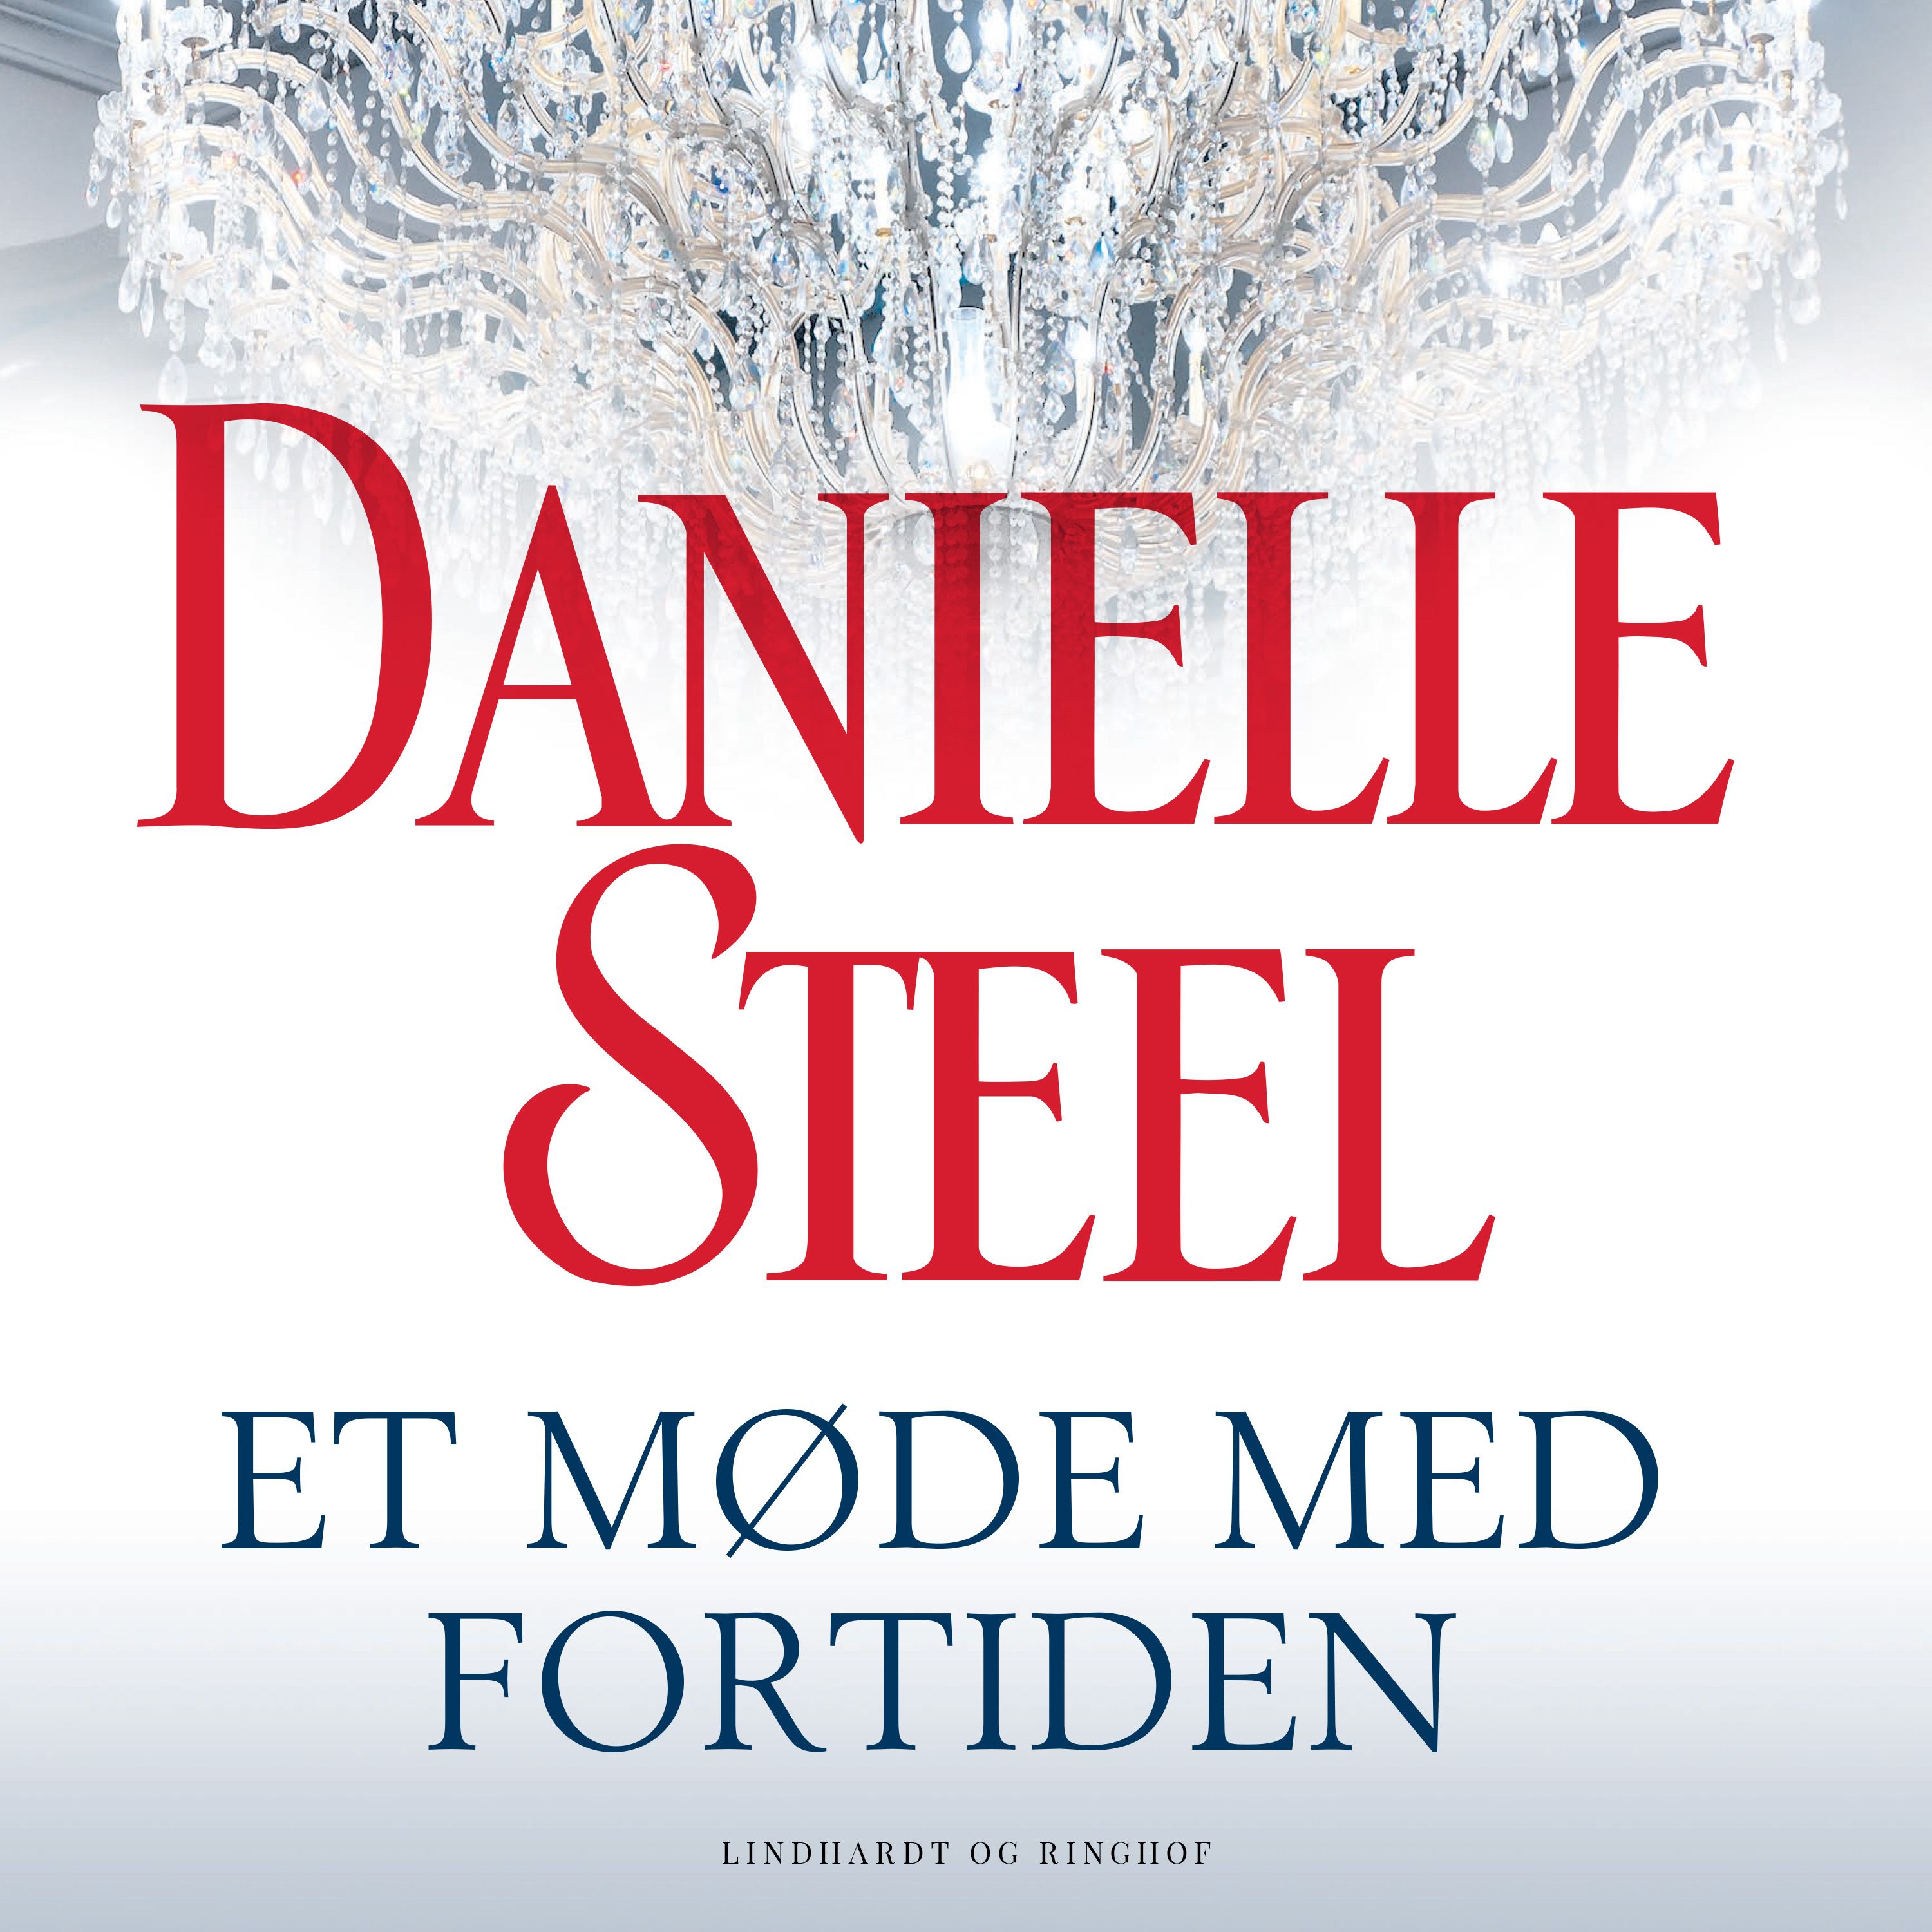 Et møde med fortiden, ljudbok av Danielle Steel